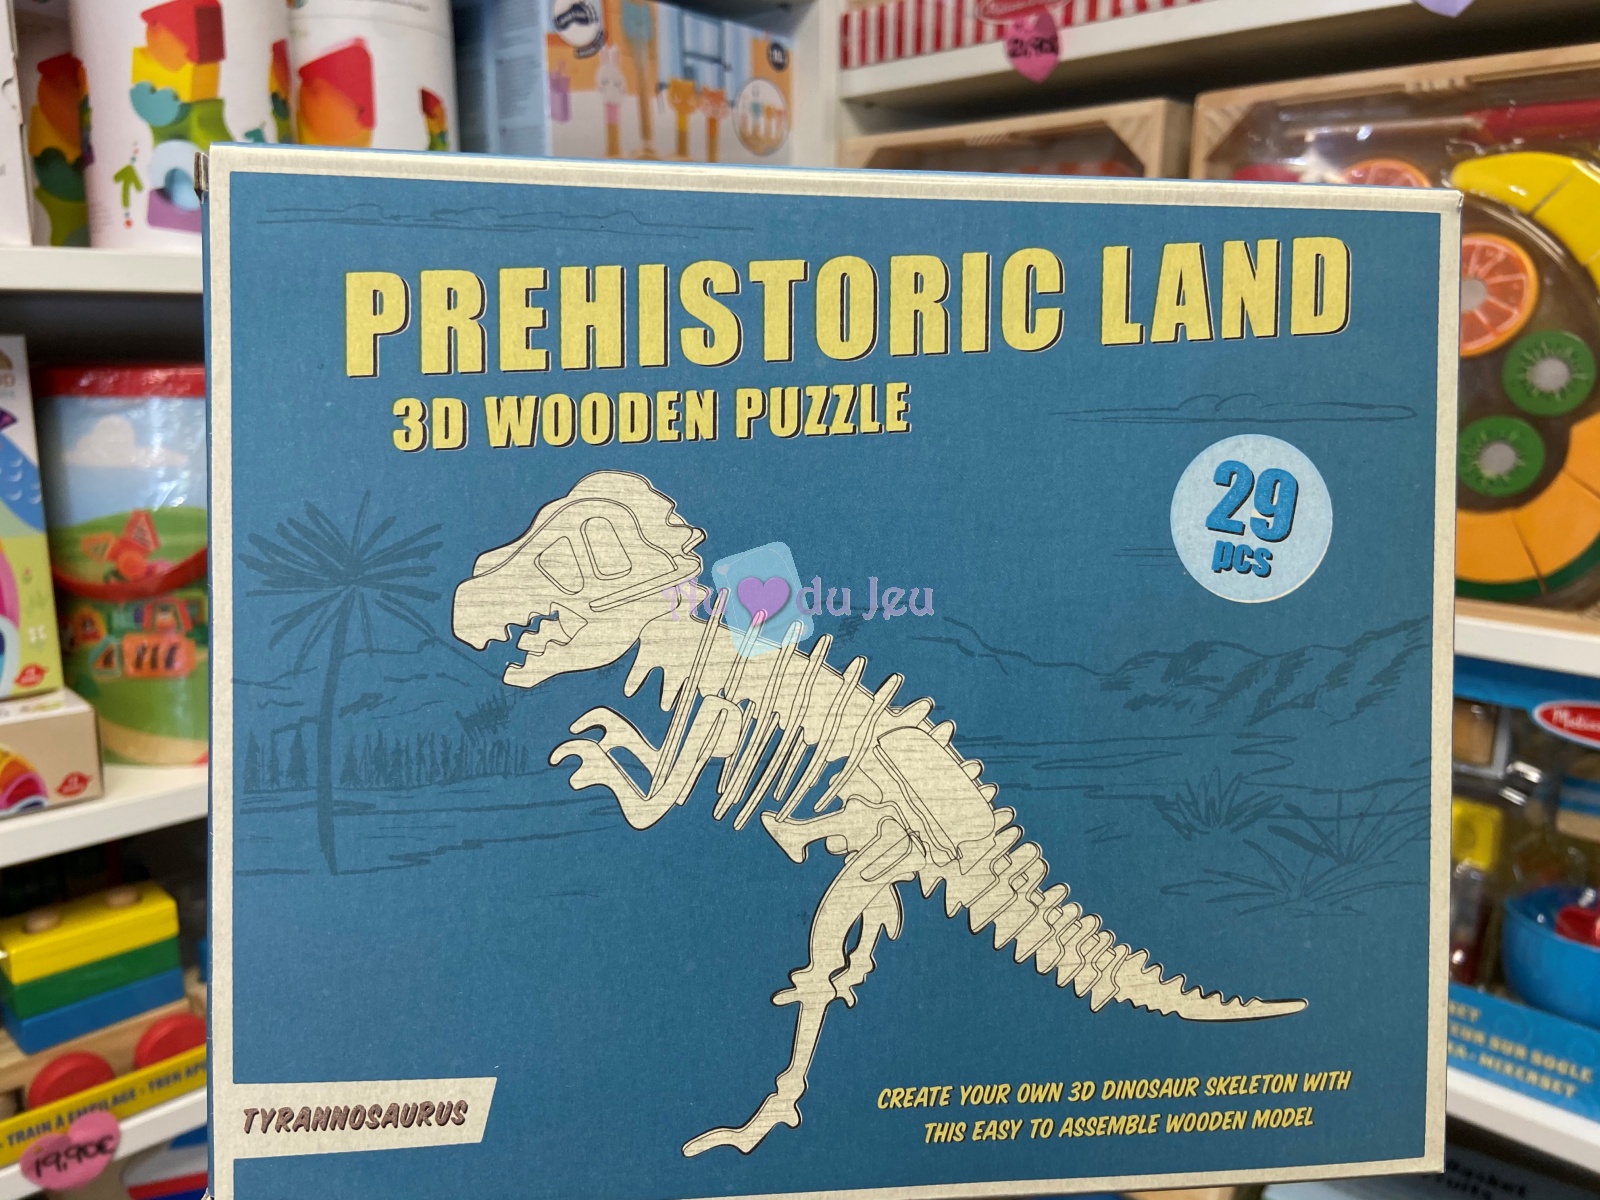 Puzzle 3D en Bois T-rex Rex London